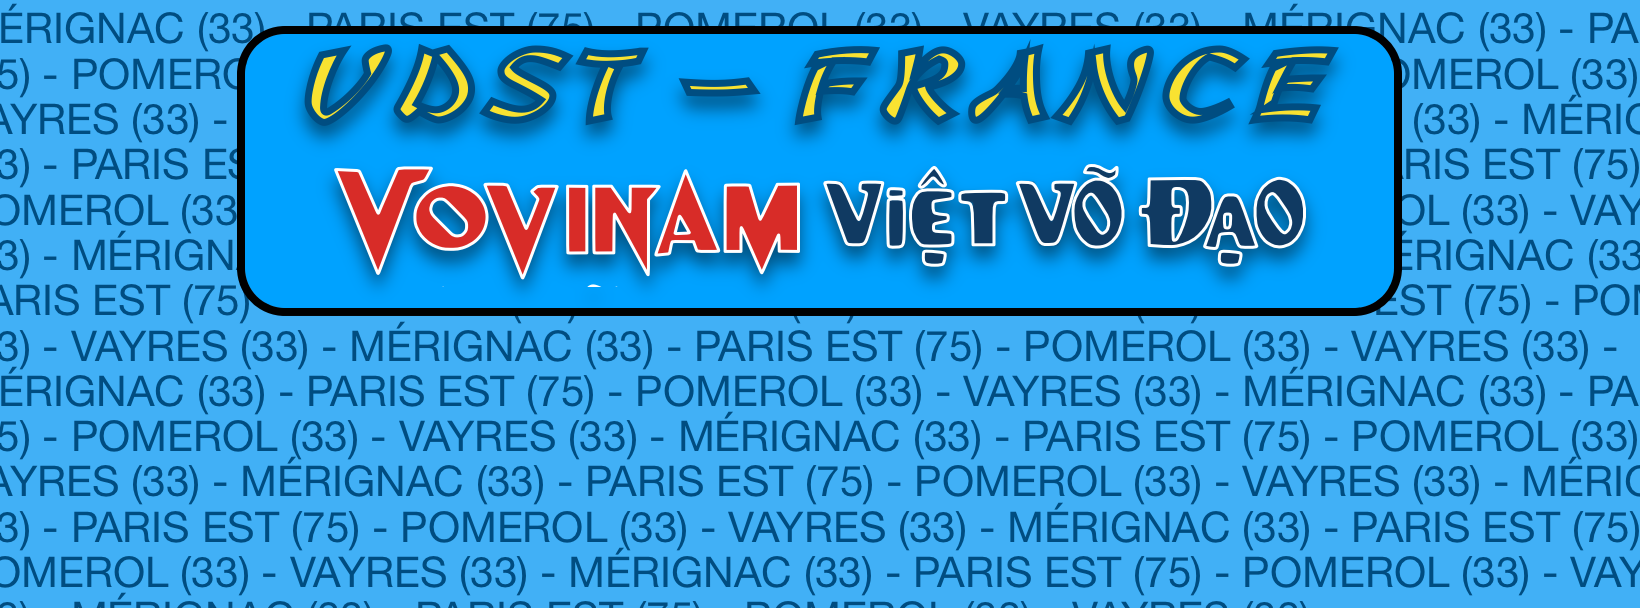 Le VDST France lance sa page Facebook officielle pour un partage passionné du Vovinam – Việt Võ Đạo